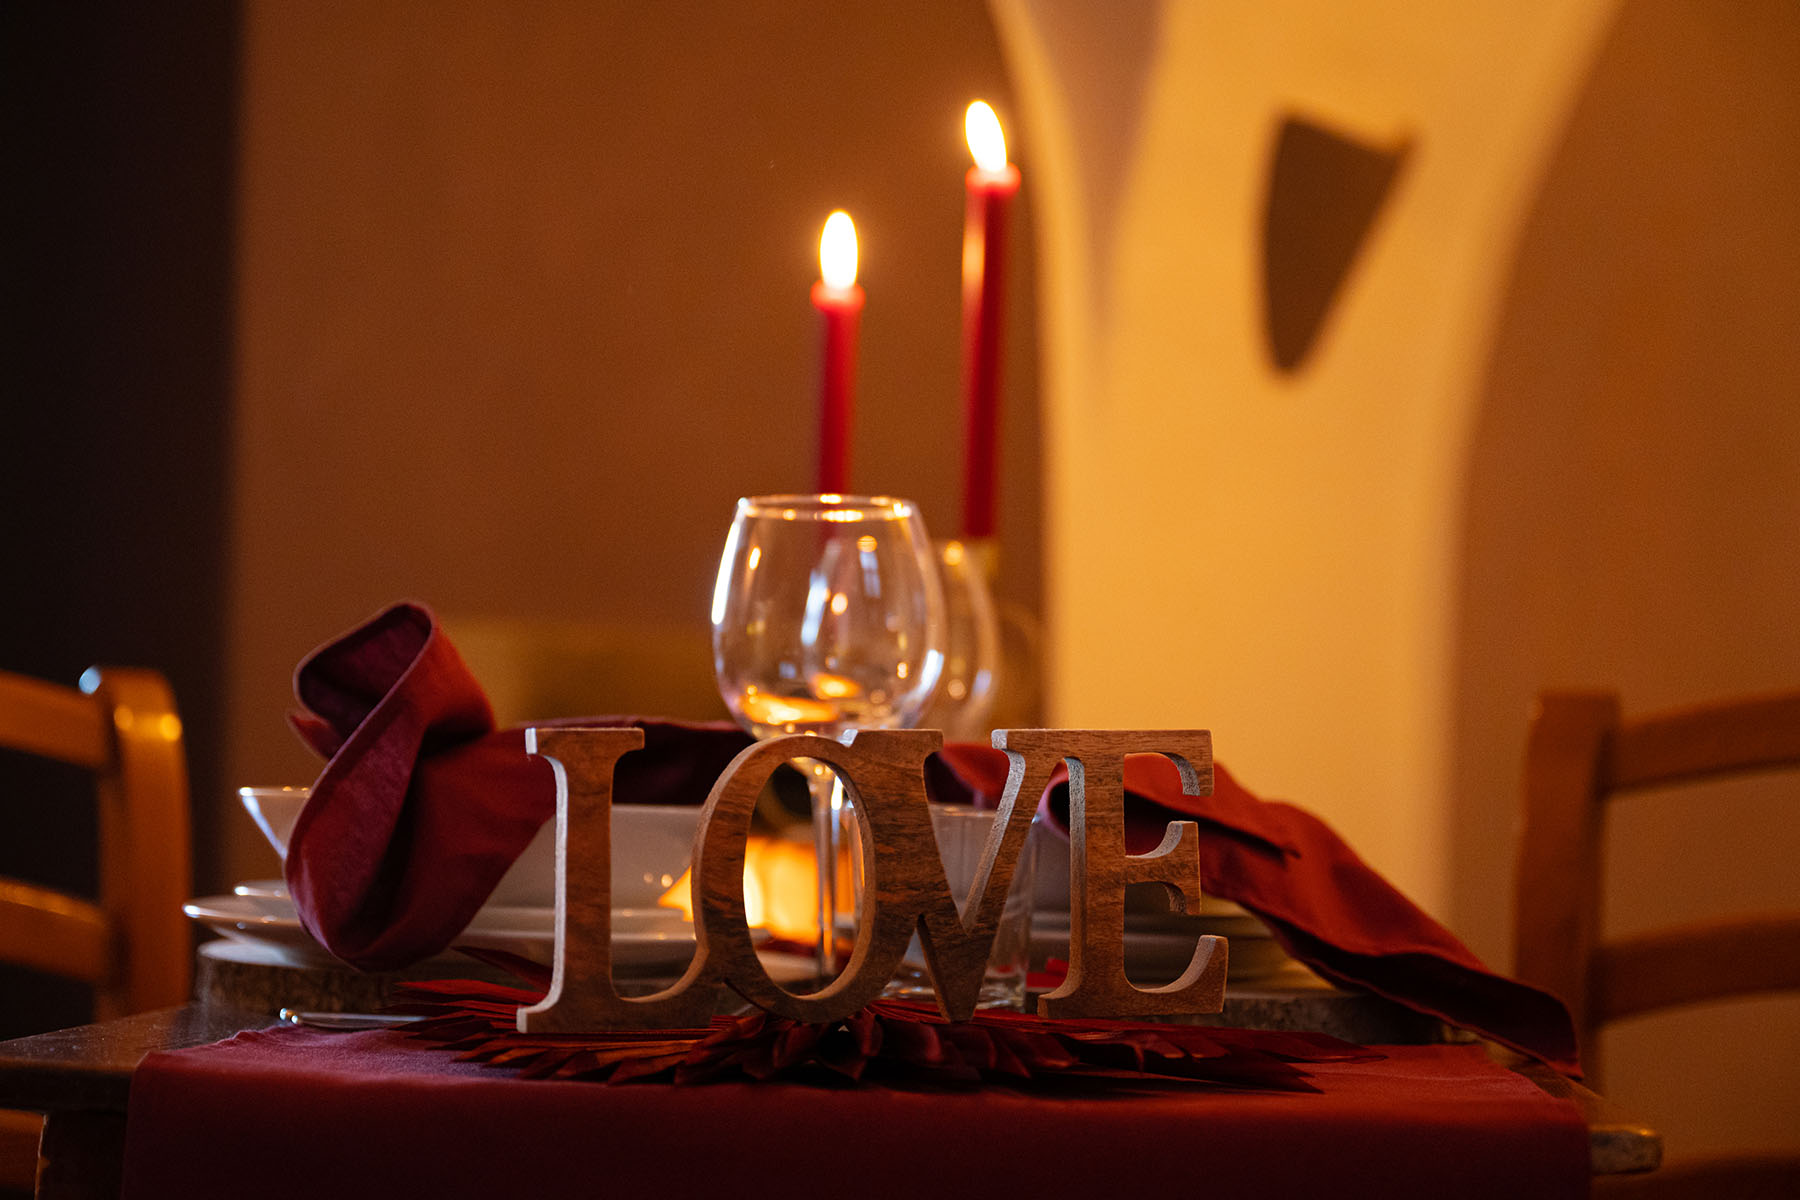 San Valentino 2022 notte con cena esclusiva per coppia con spa privata - Idea regalo originale